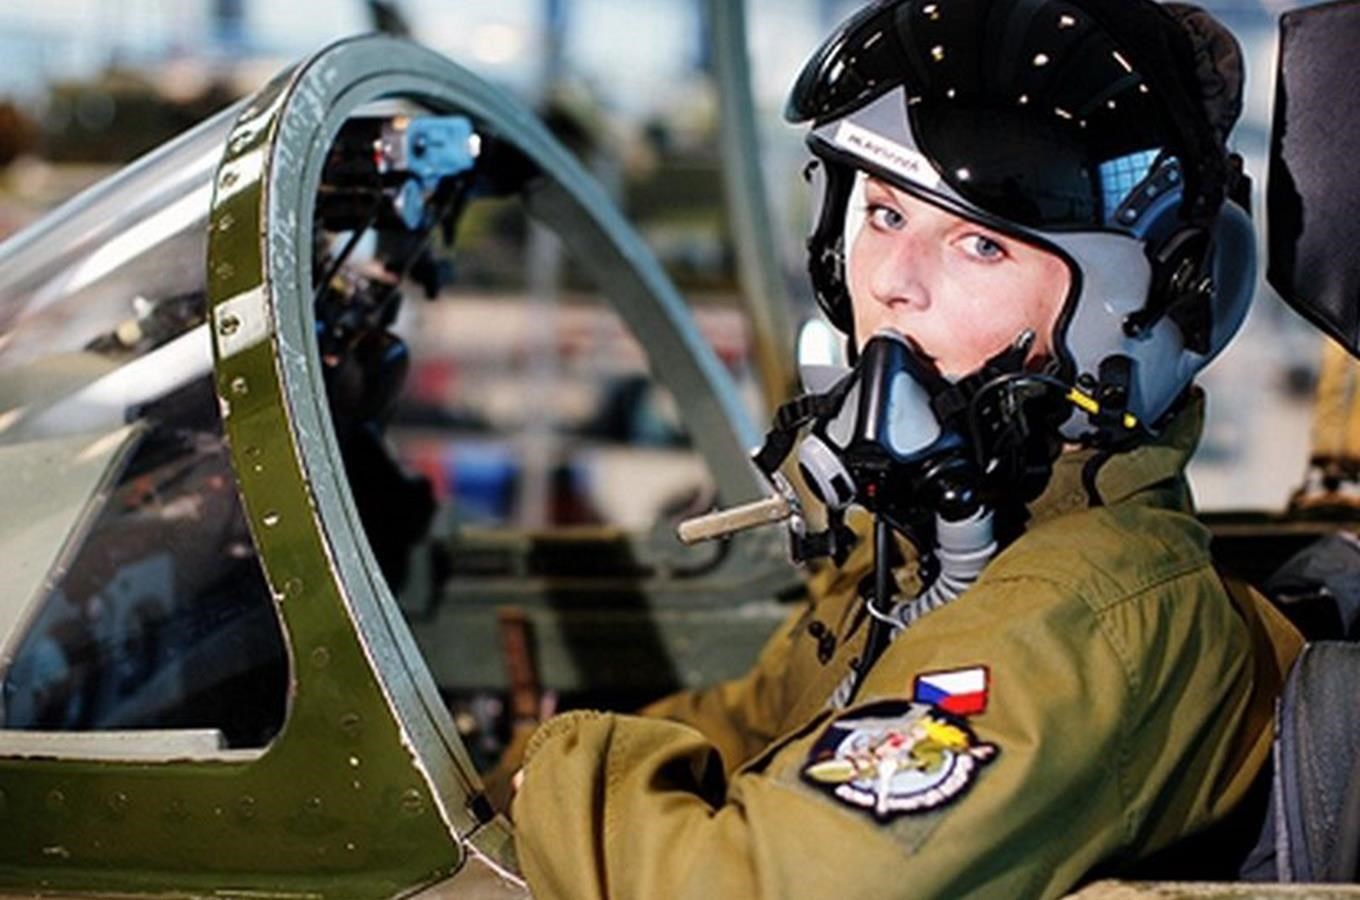 V Národním technickém muzeu se představí ženy - pilotky